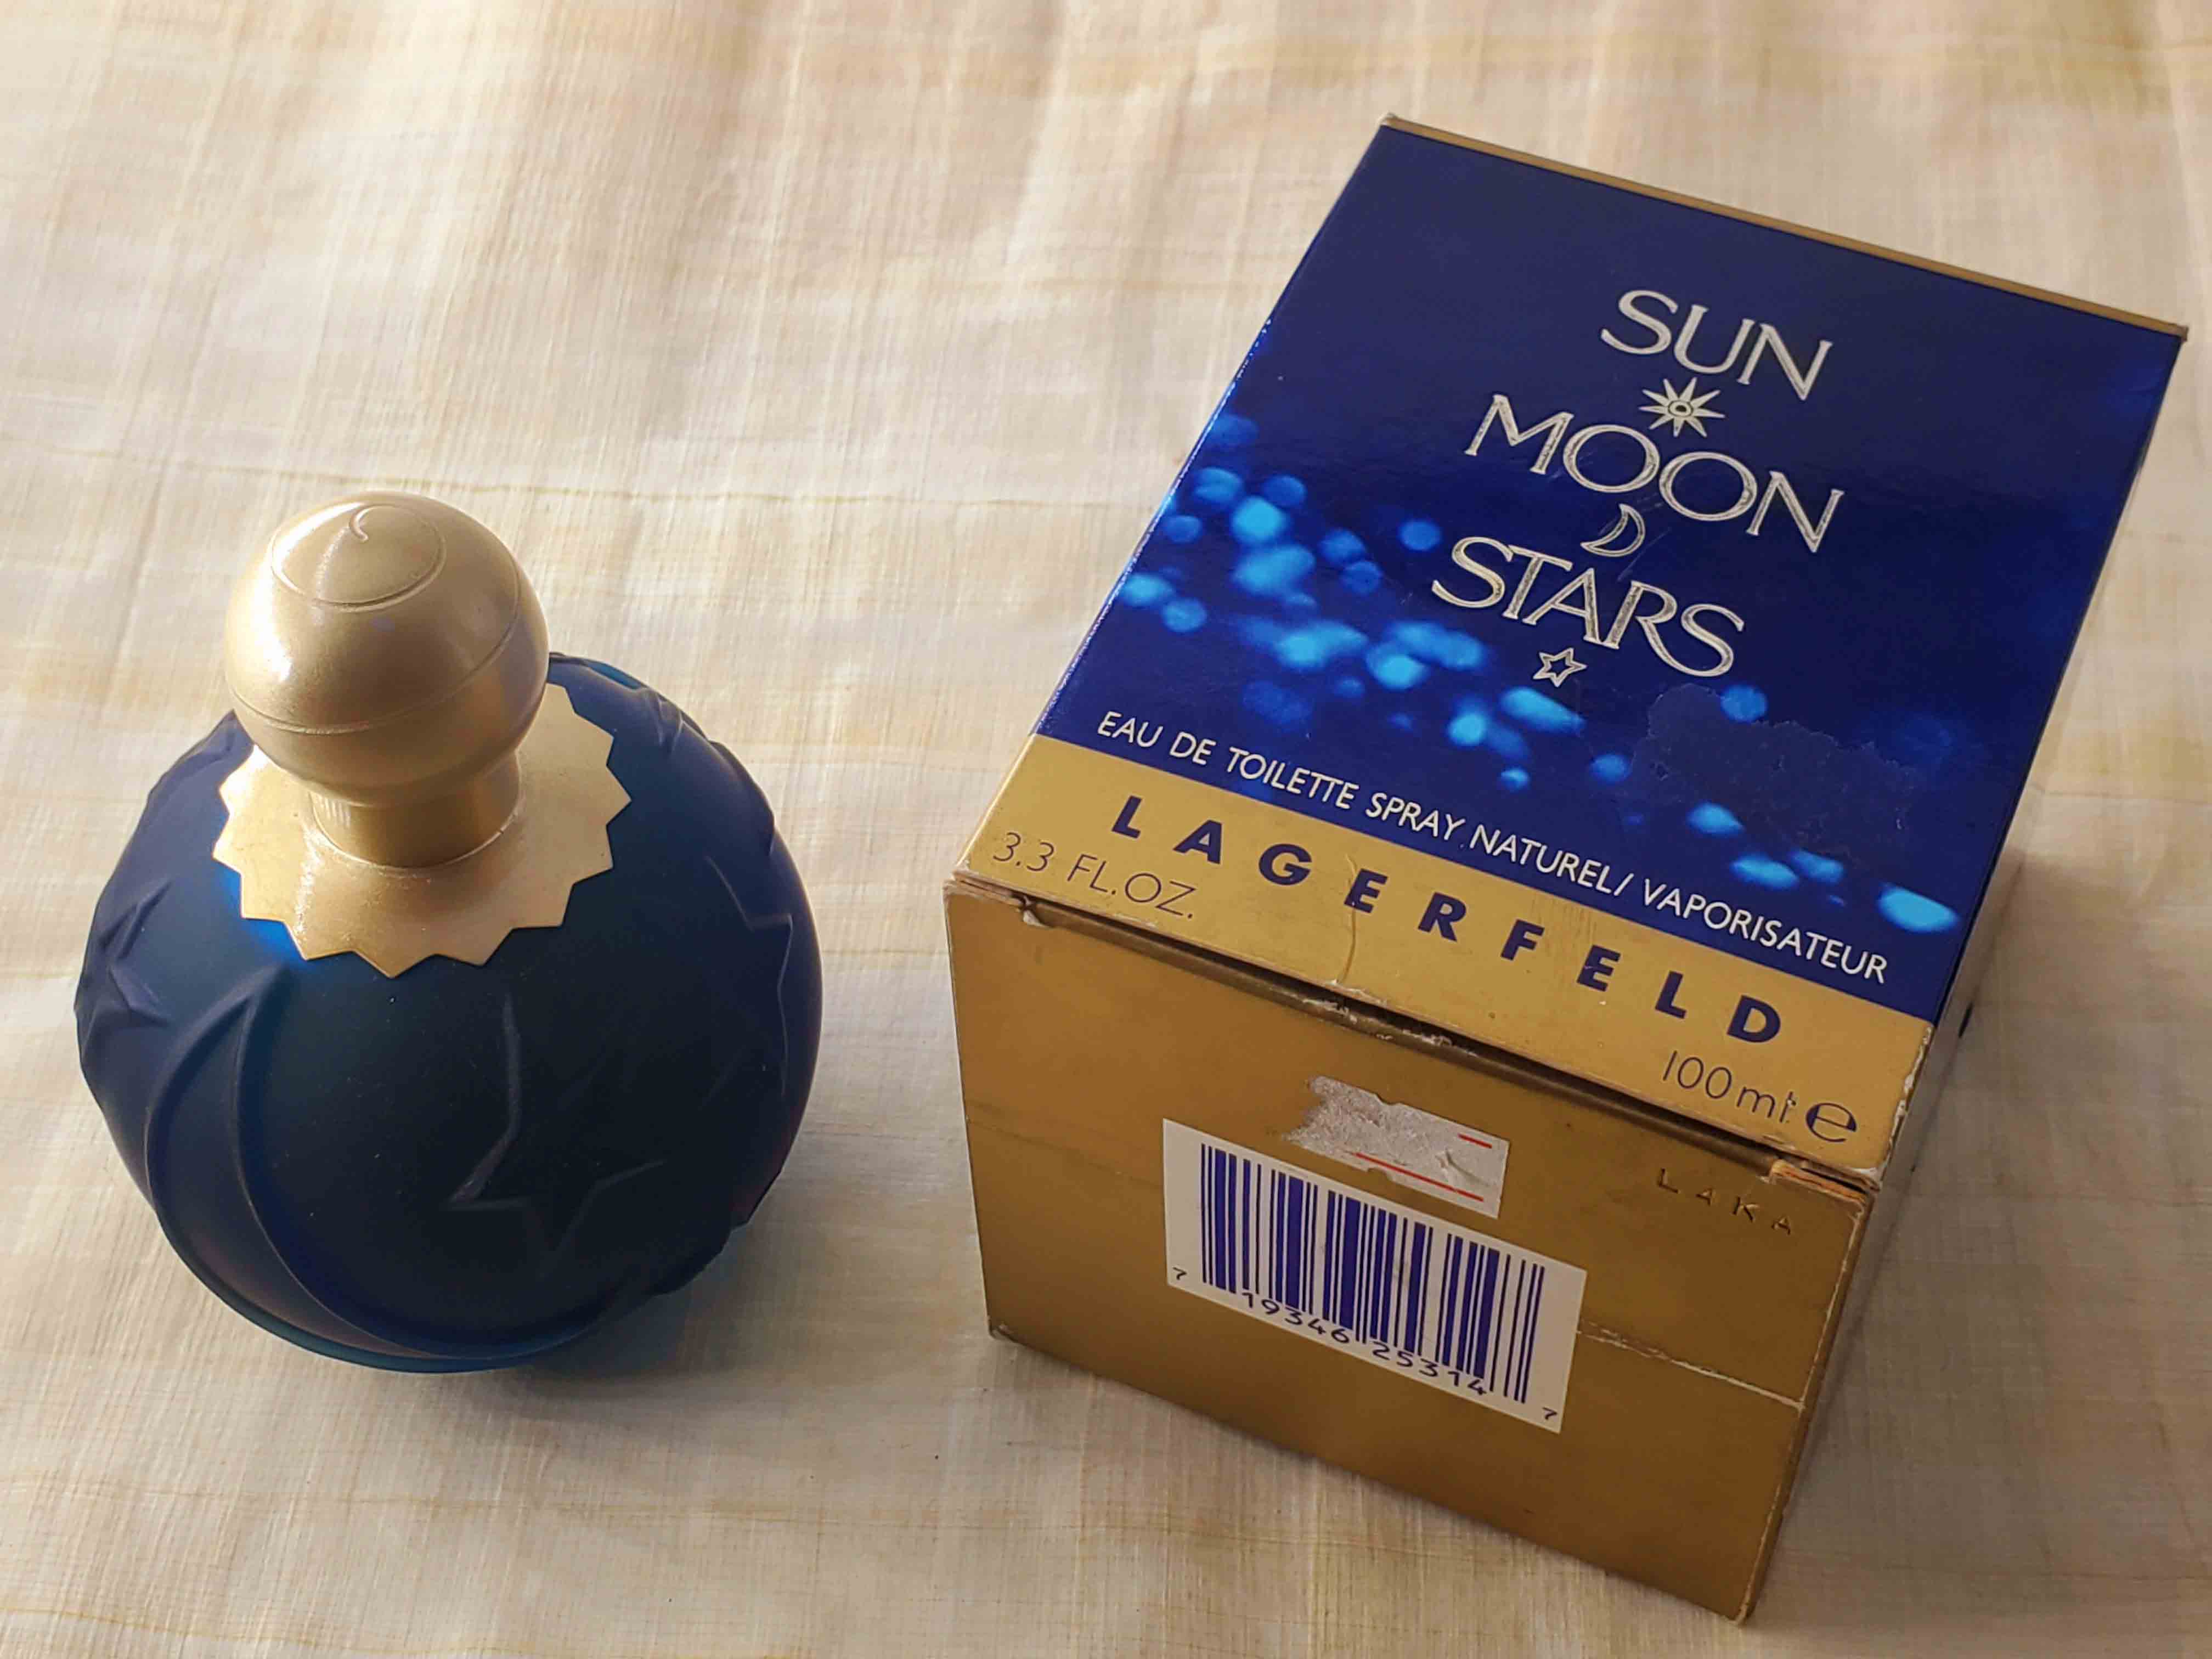 Sun Moon Stars Eau de Toilette Spray by Karl Lagerfeld - 3.3 oz